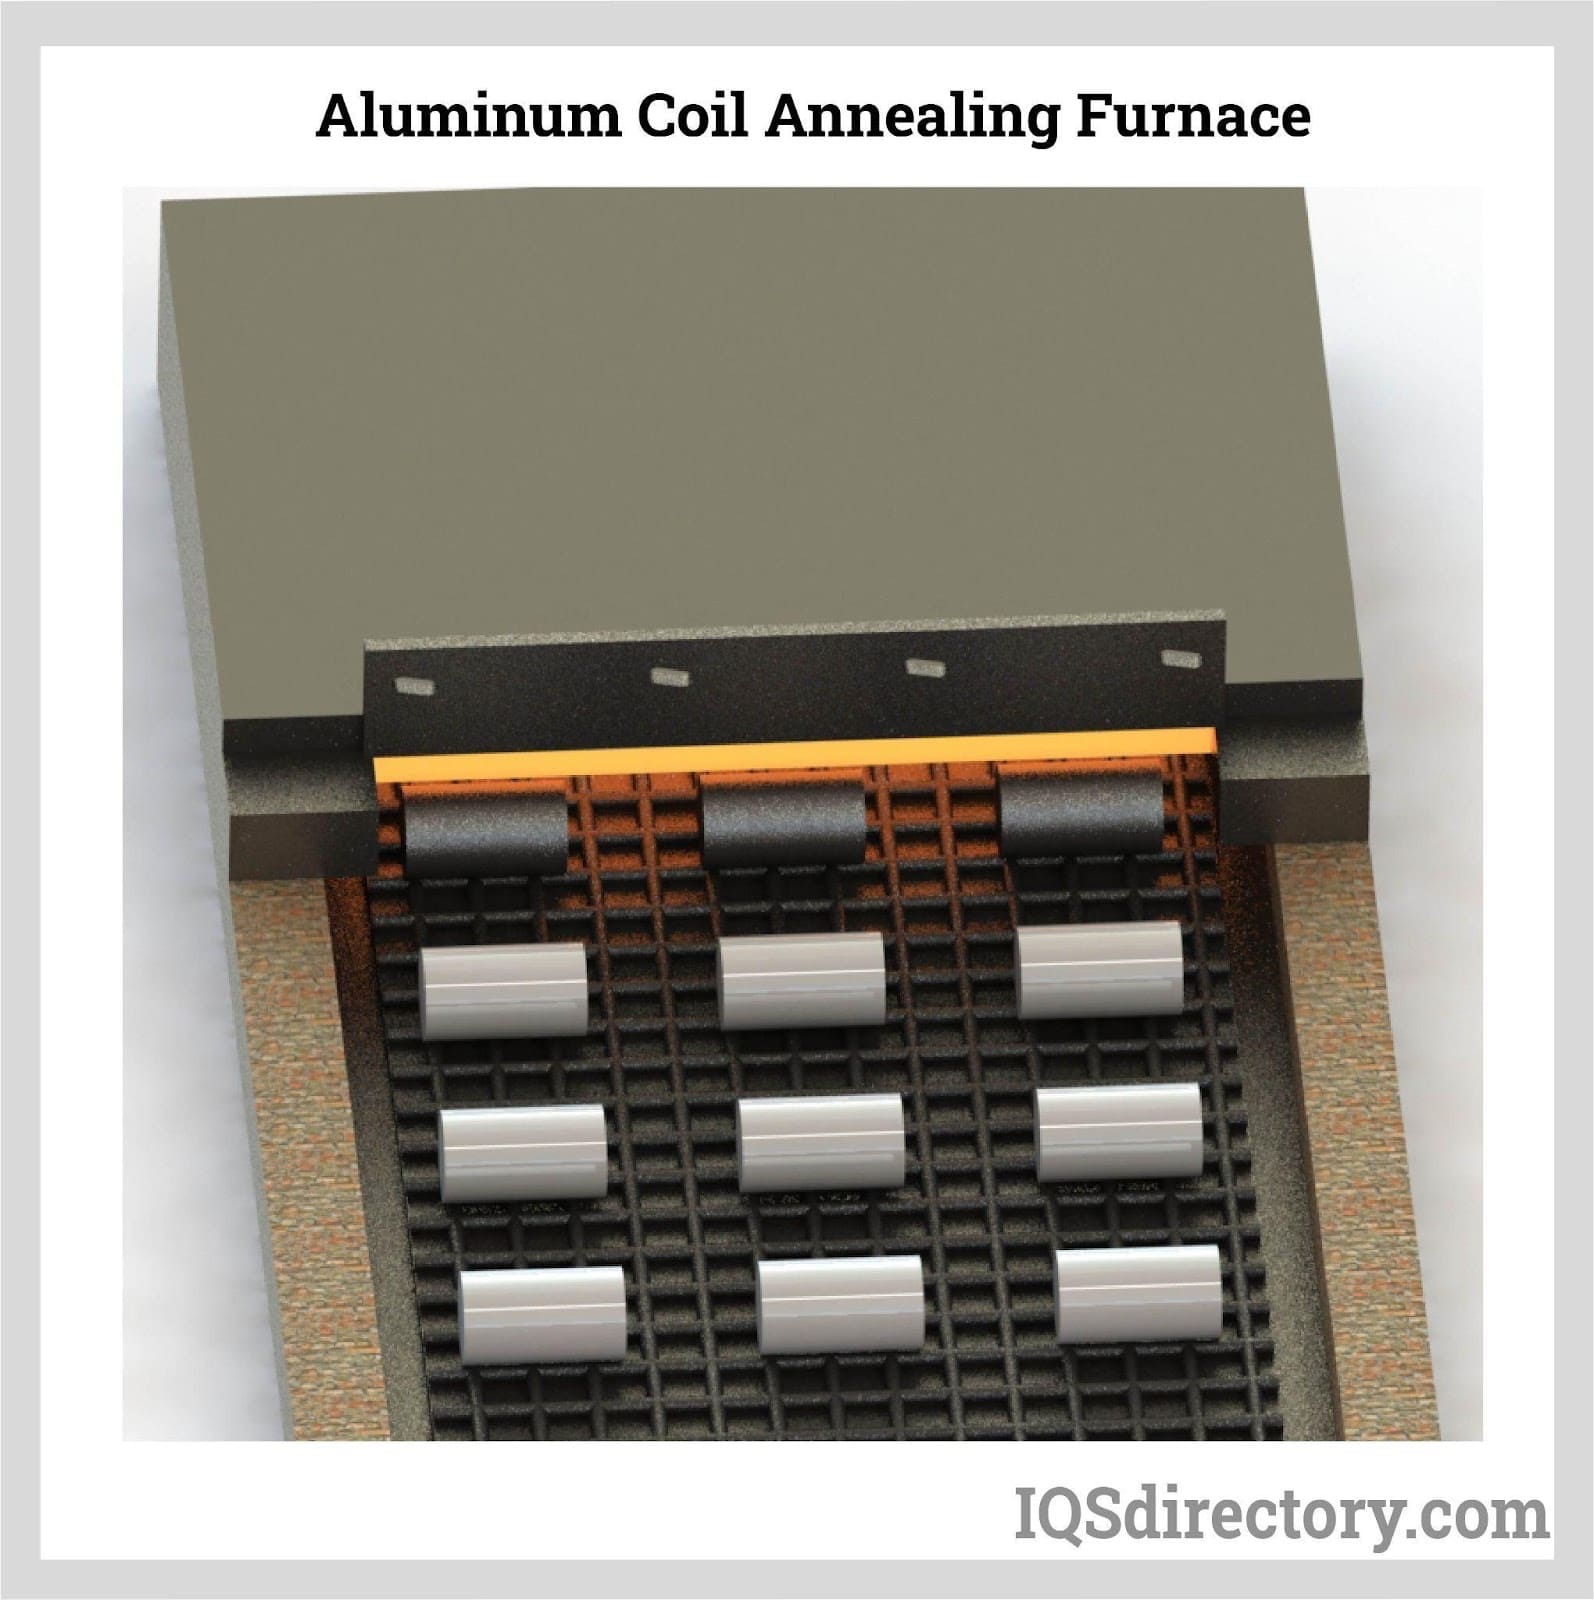 Aluminum Coil Annealing Furnace